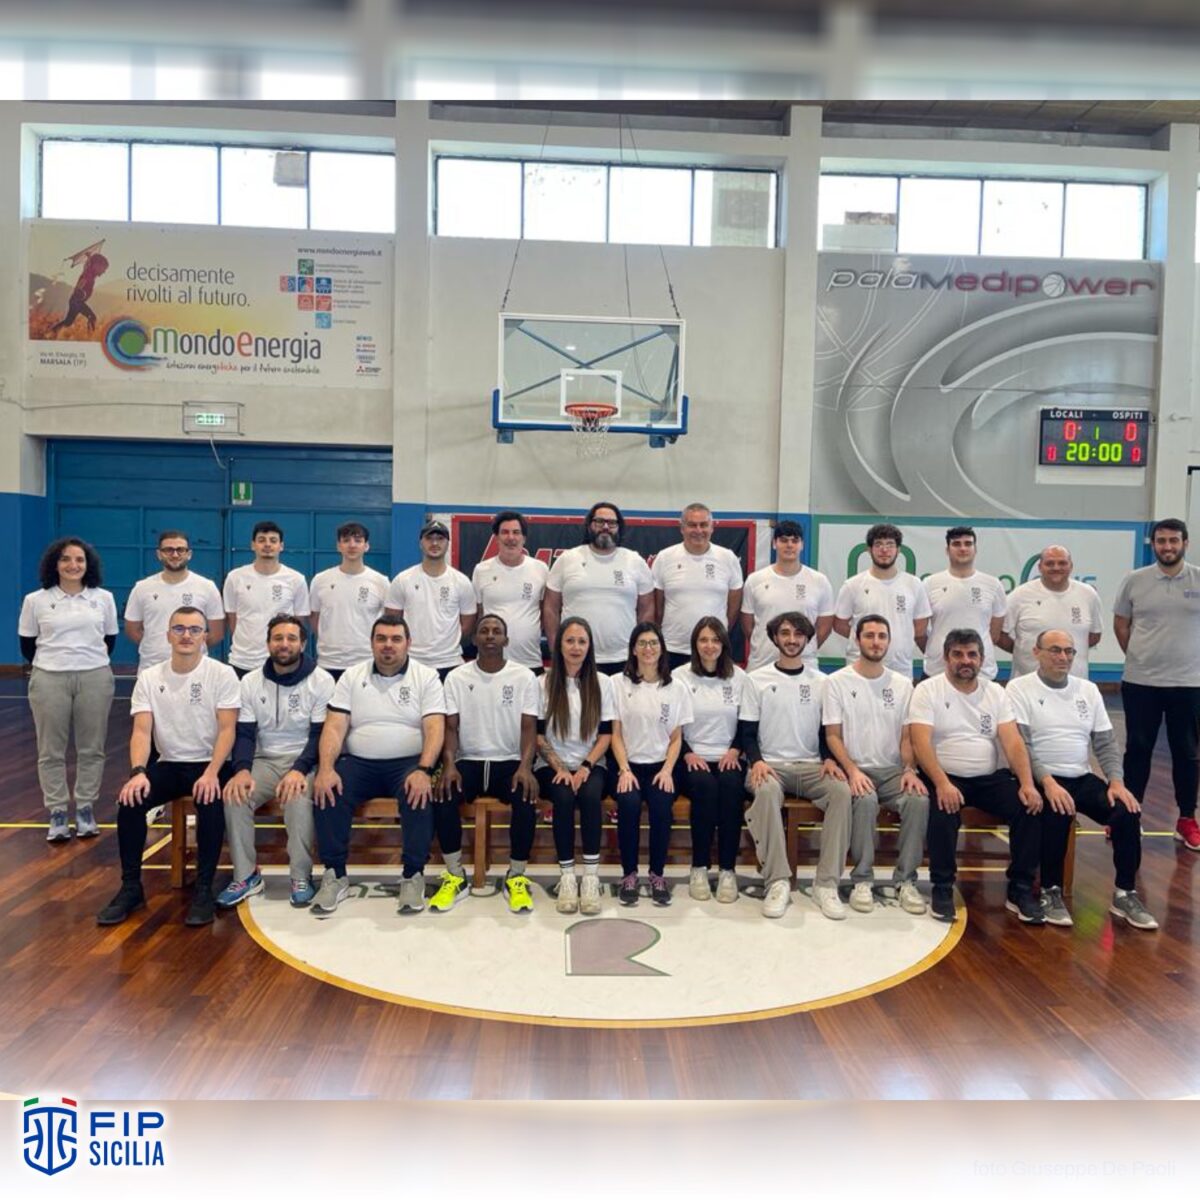 Inizia la seconda annualità del corso minibasket a Trapani: aperte le iscrizioni!